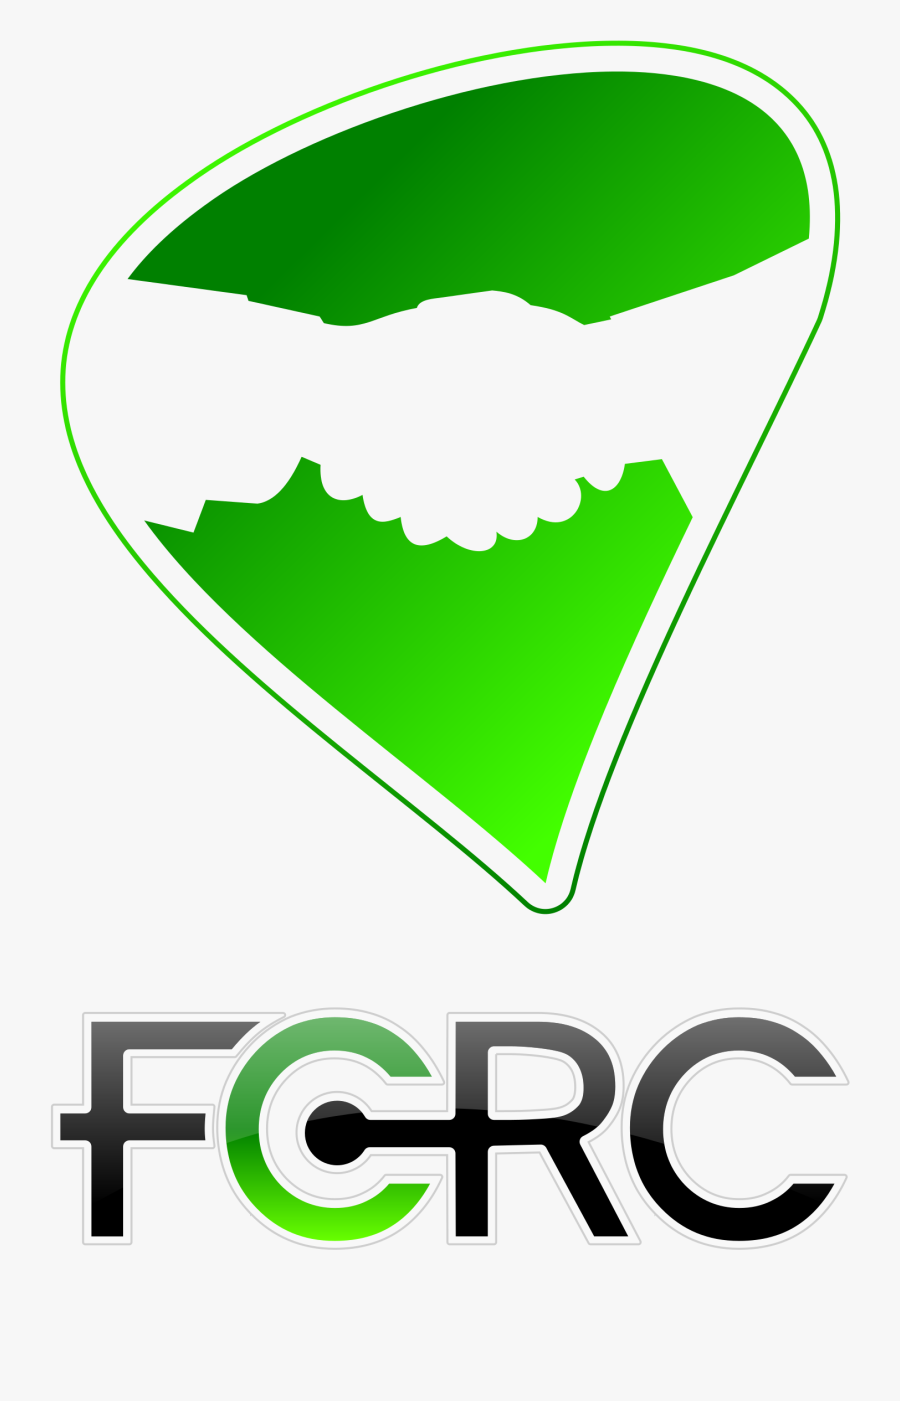 Fcrc Logo Handshake 2 - Graphic Design, Transparent Clipart